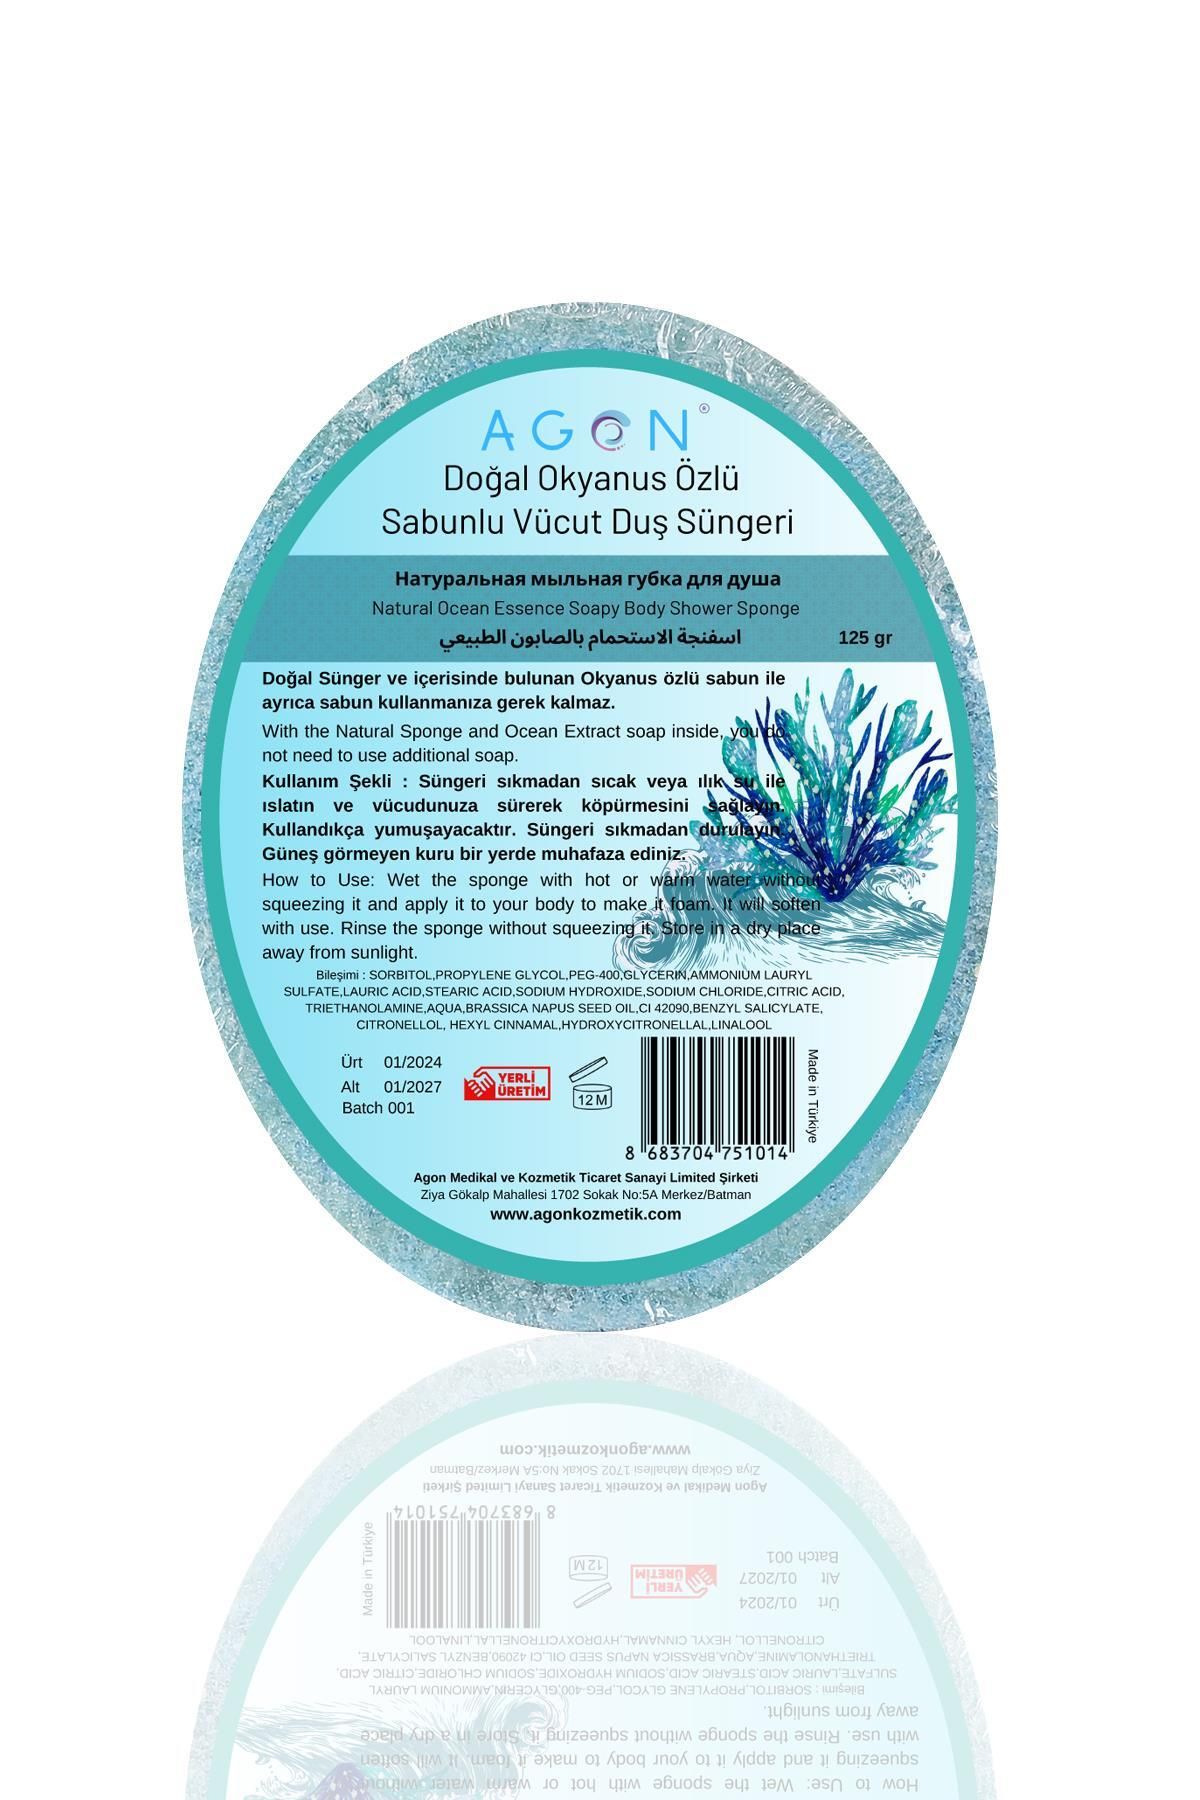 Agon Doğal El Yapımı Okyanus Özlü Sabunlu Vücut Duş Süngeri 125 gr